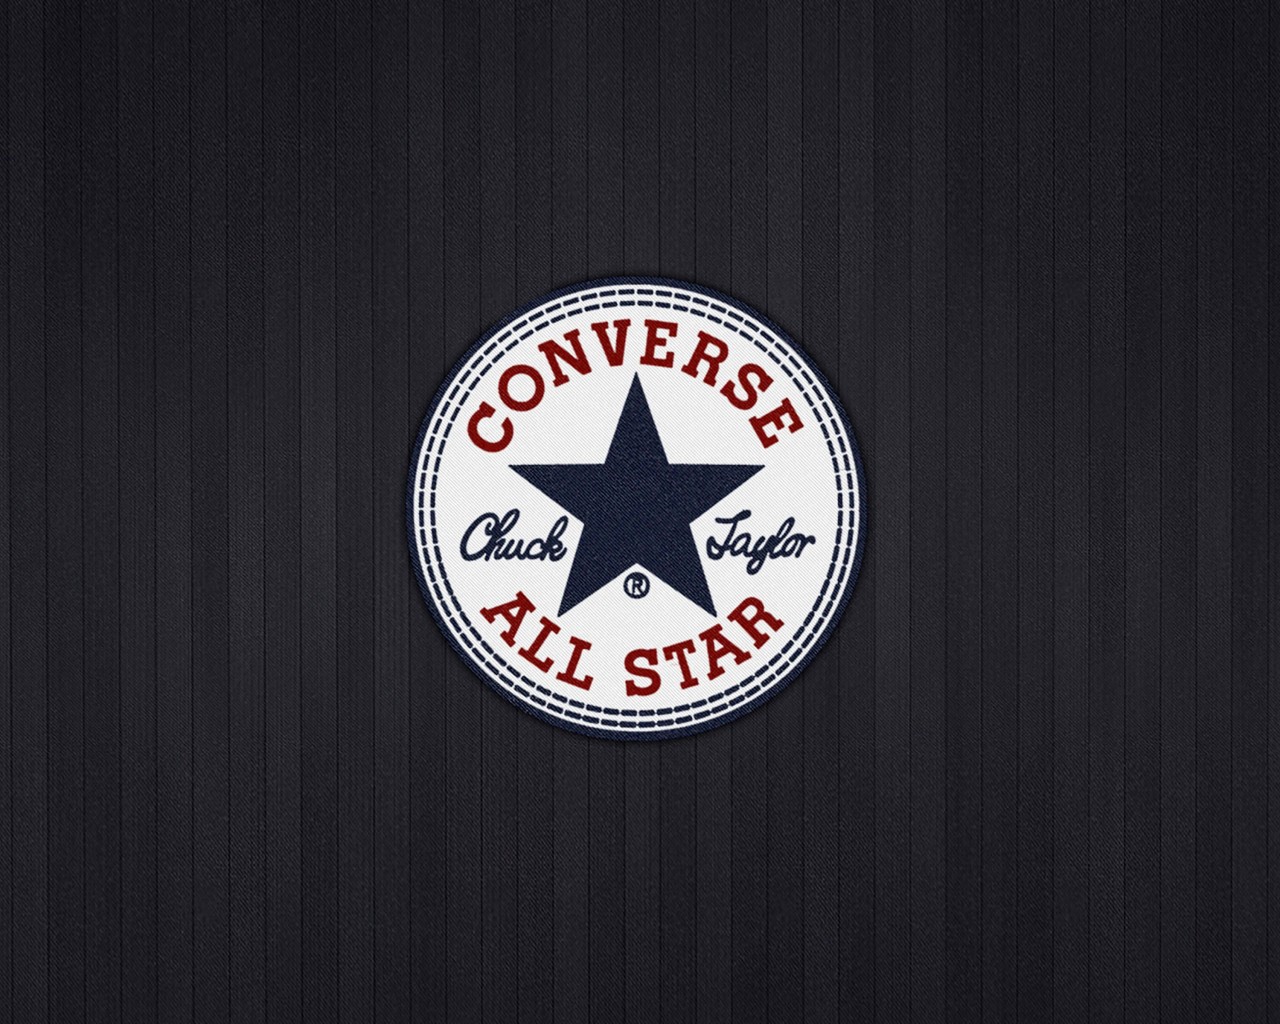 Converse All Star Wallpaper for Desktop 1280x1024